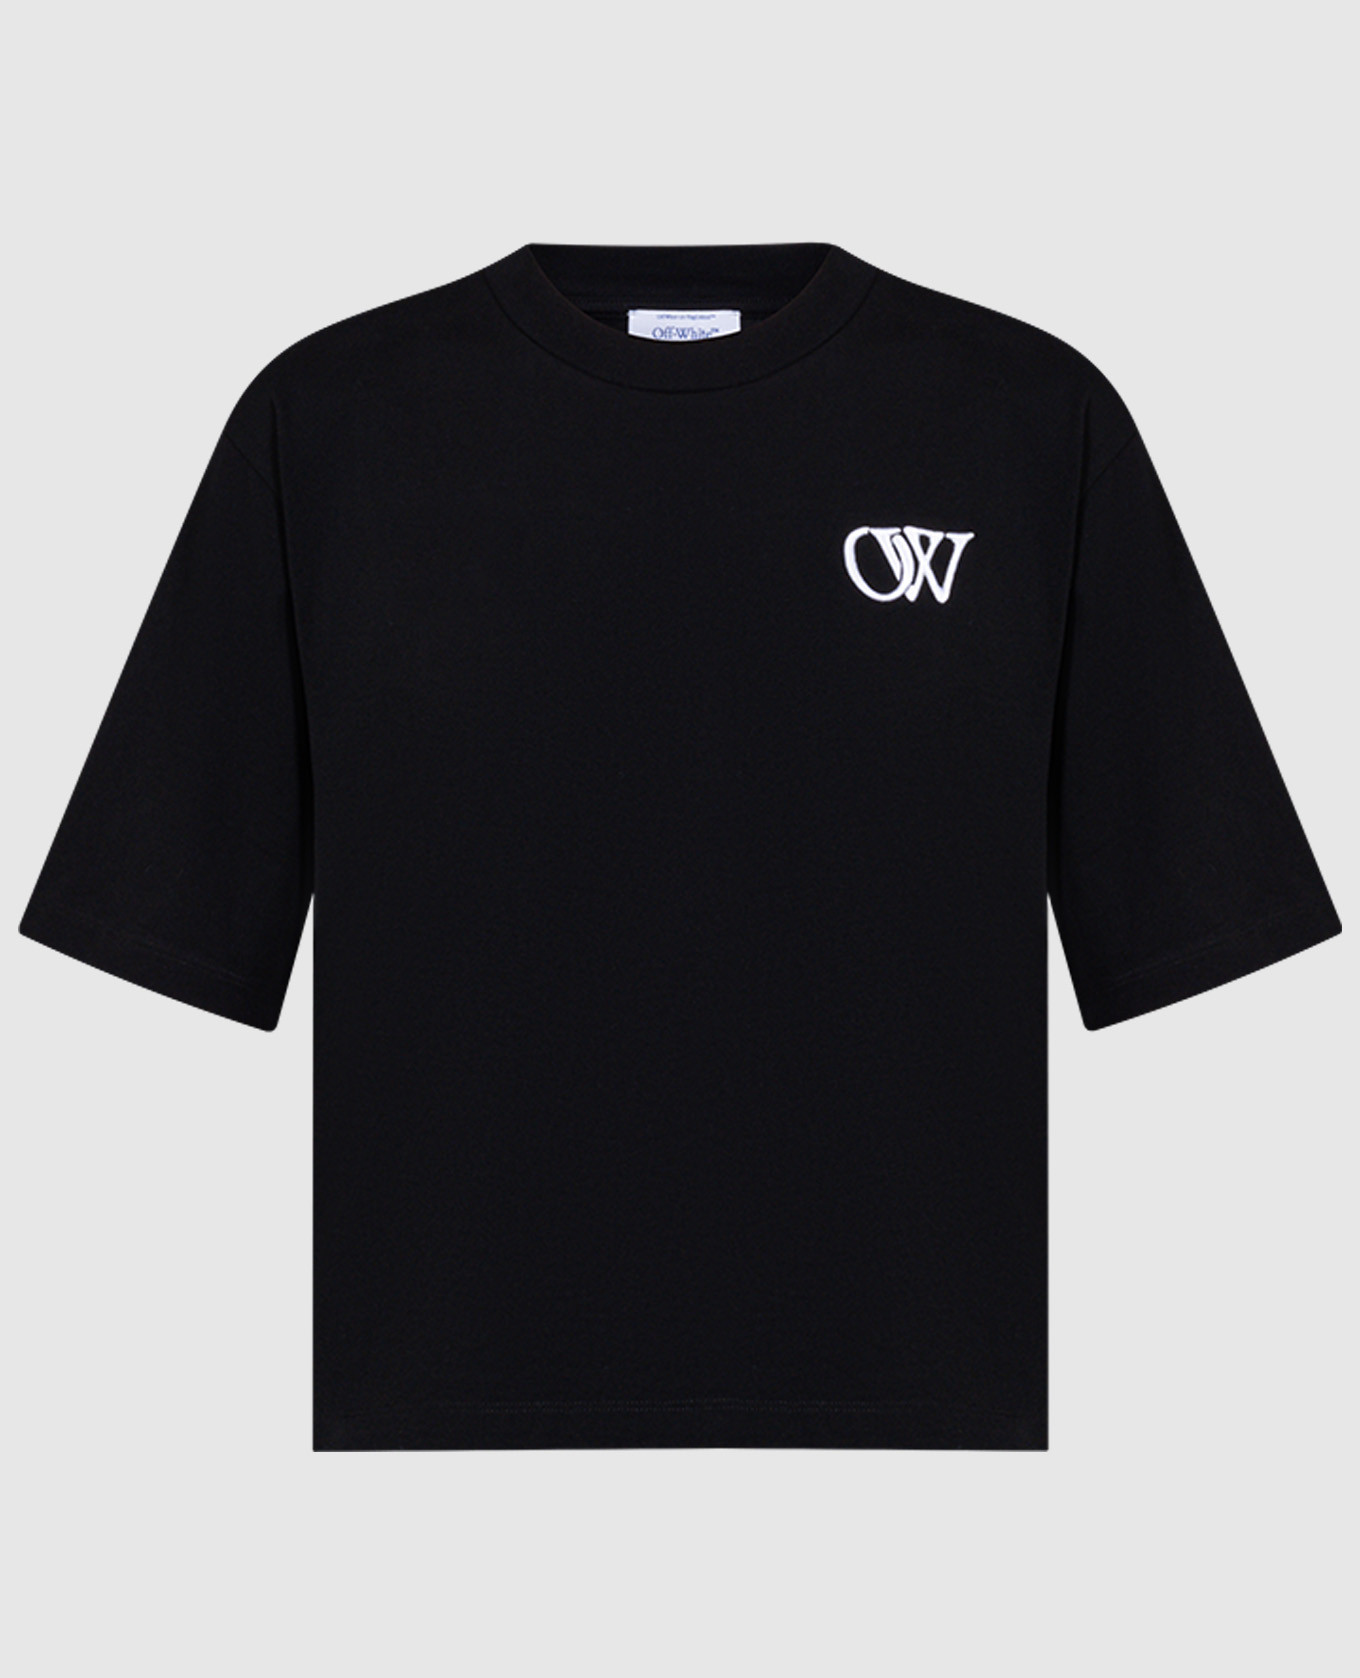 Черная футболка с контрастной вышивкой логотипа OW